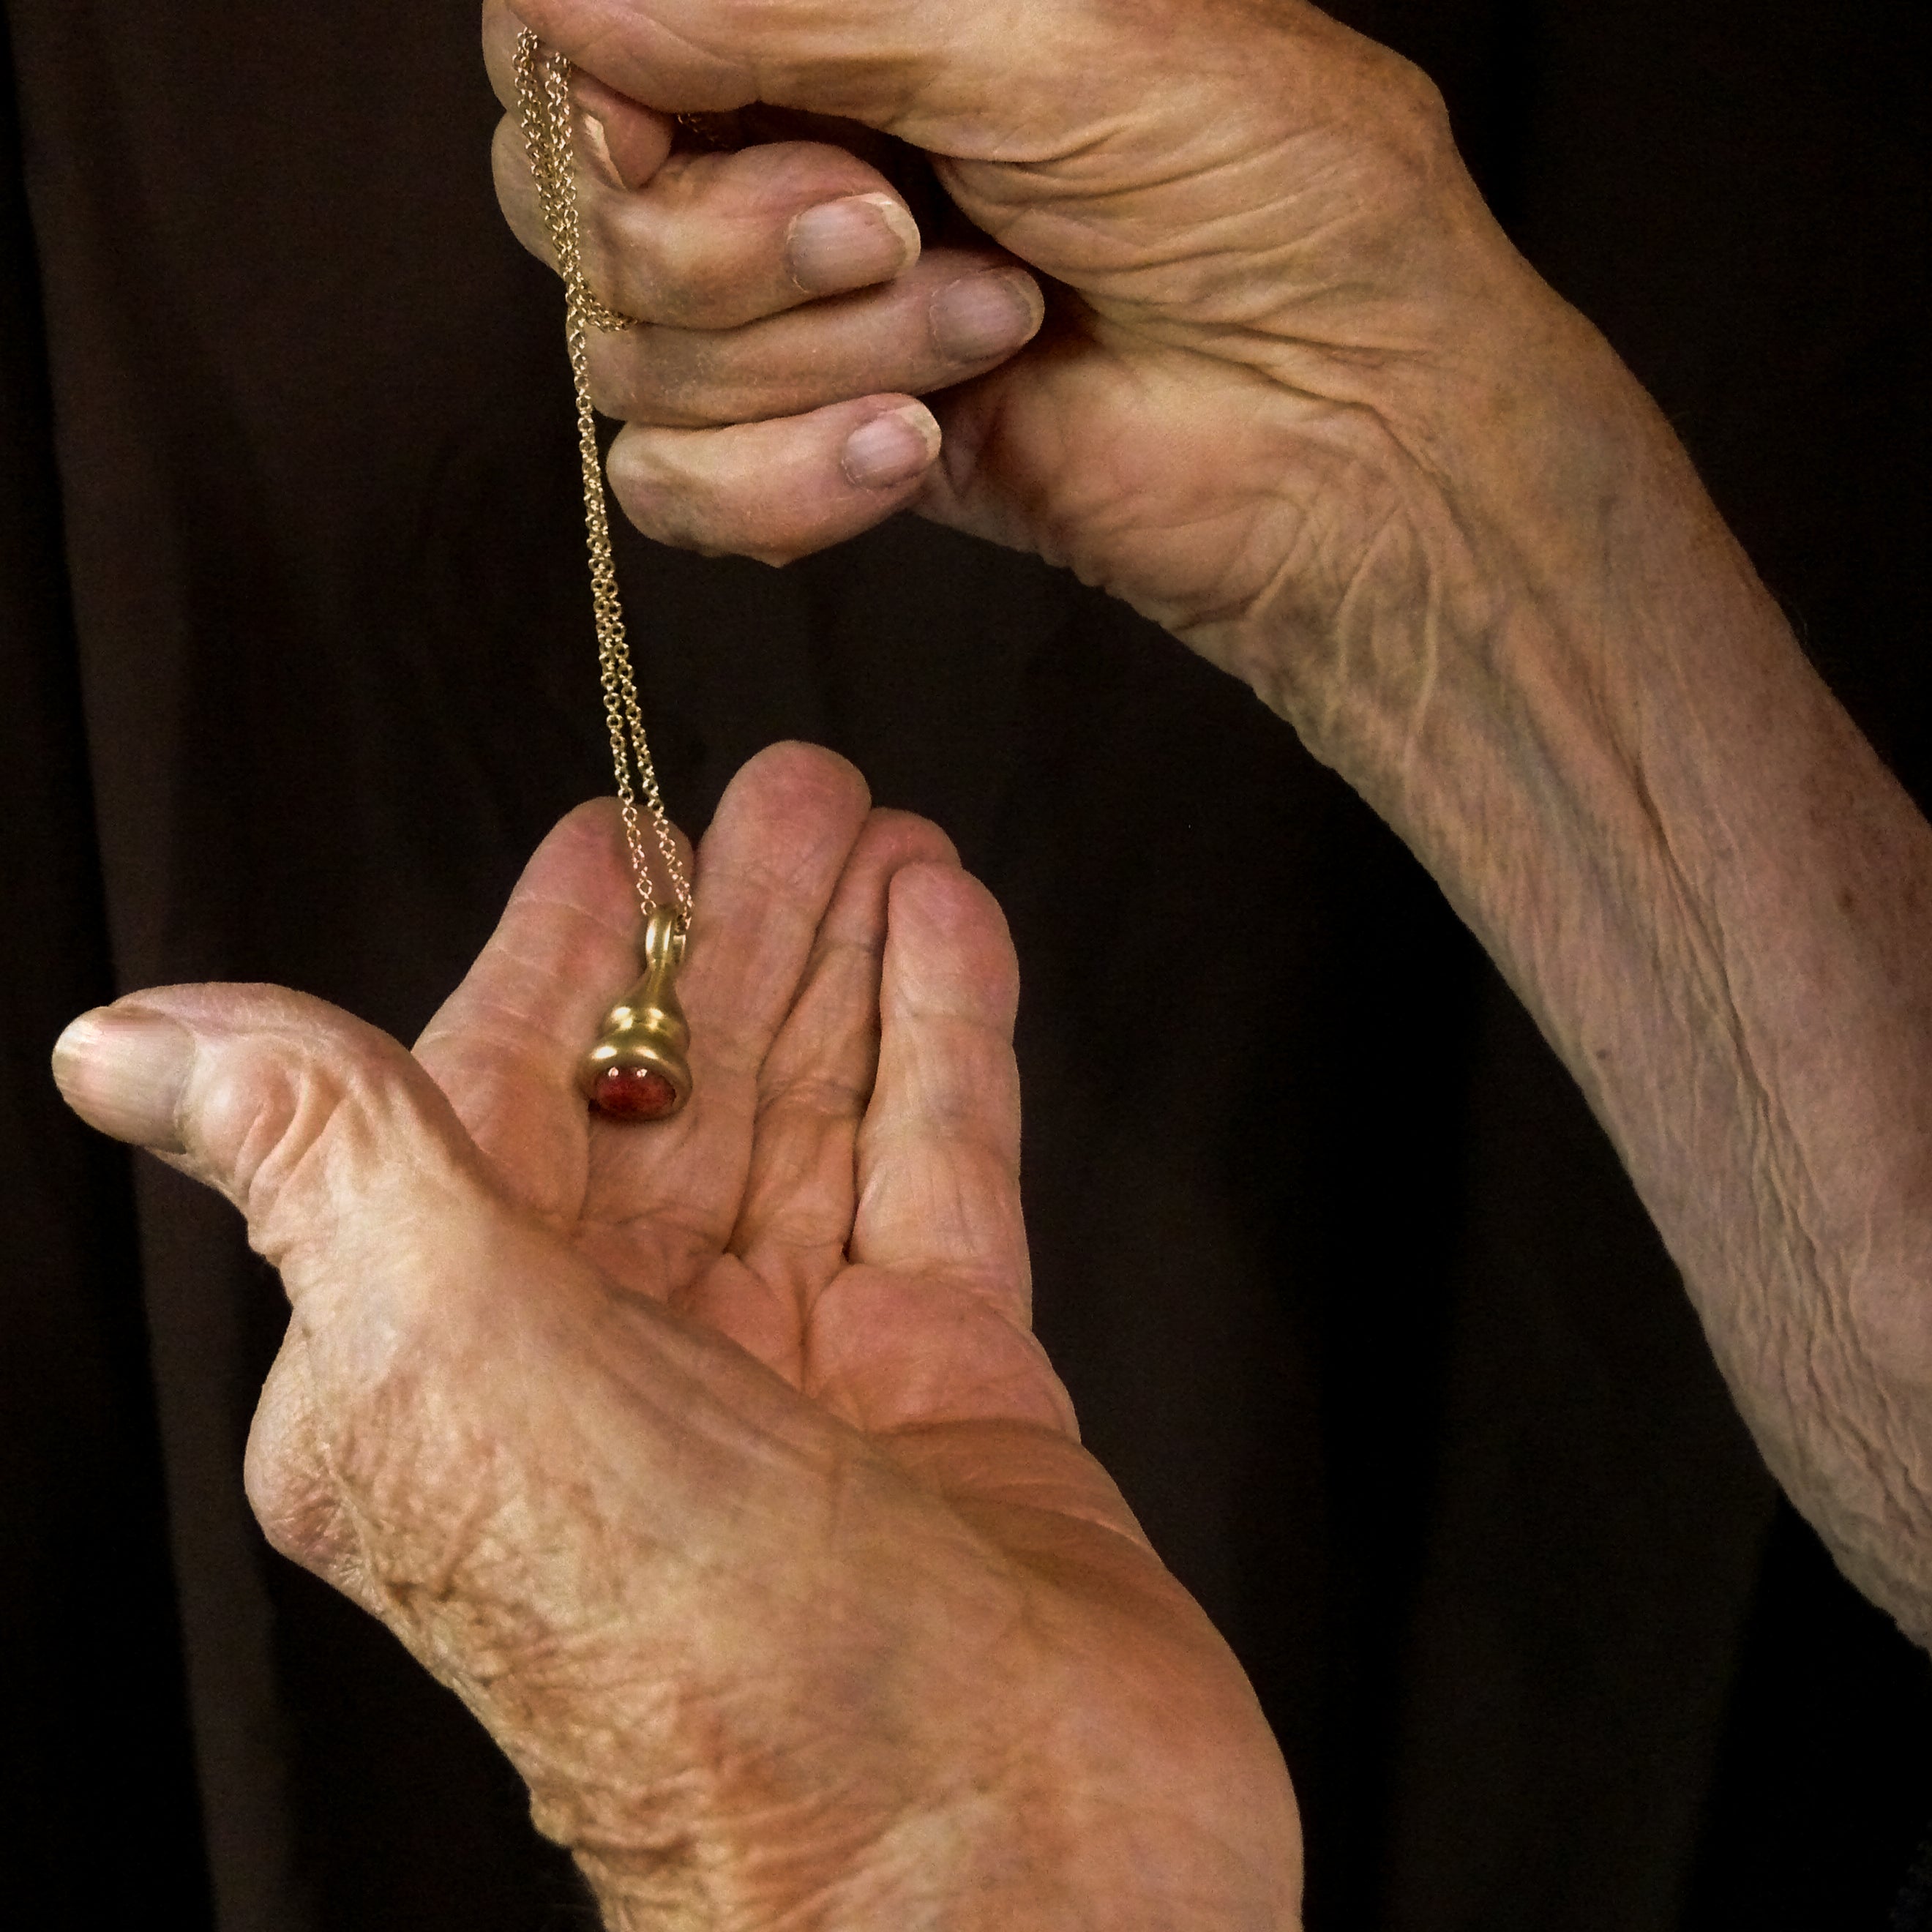 Gold tourmaline pendulum charm in grandma's hands